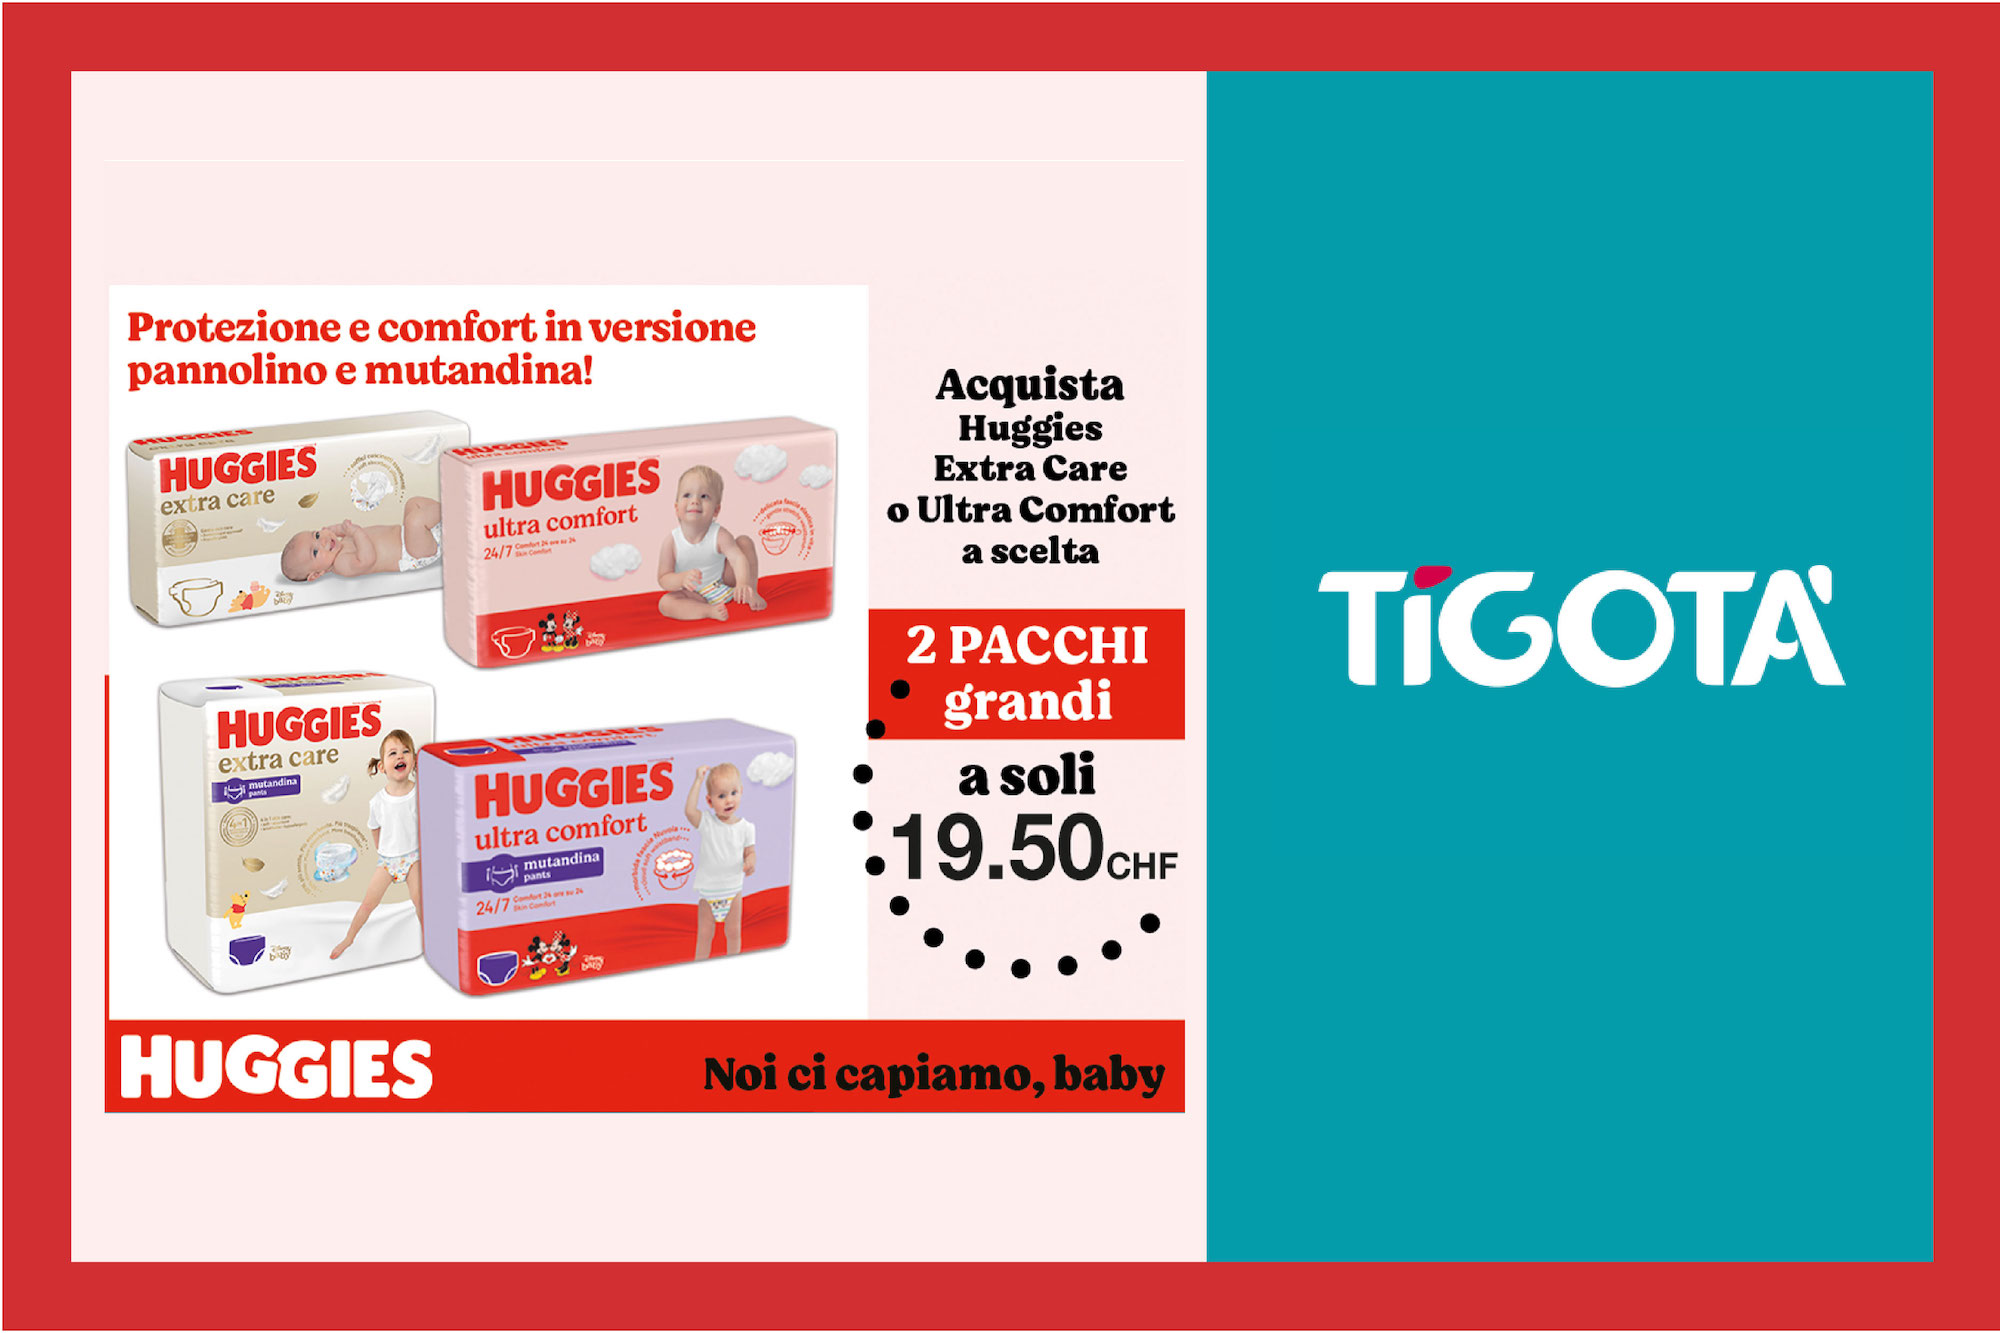 Protezione e comfort per il tuo bambino! A novembre da Tigotà trovi Huggies in offerta: 2 pacchi grandi a soli CHF 19.50.